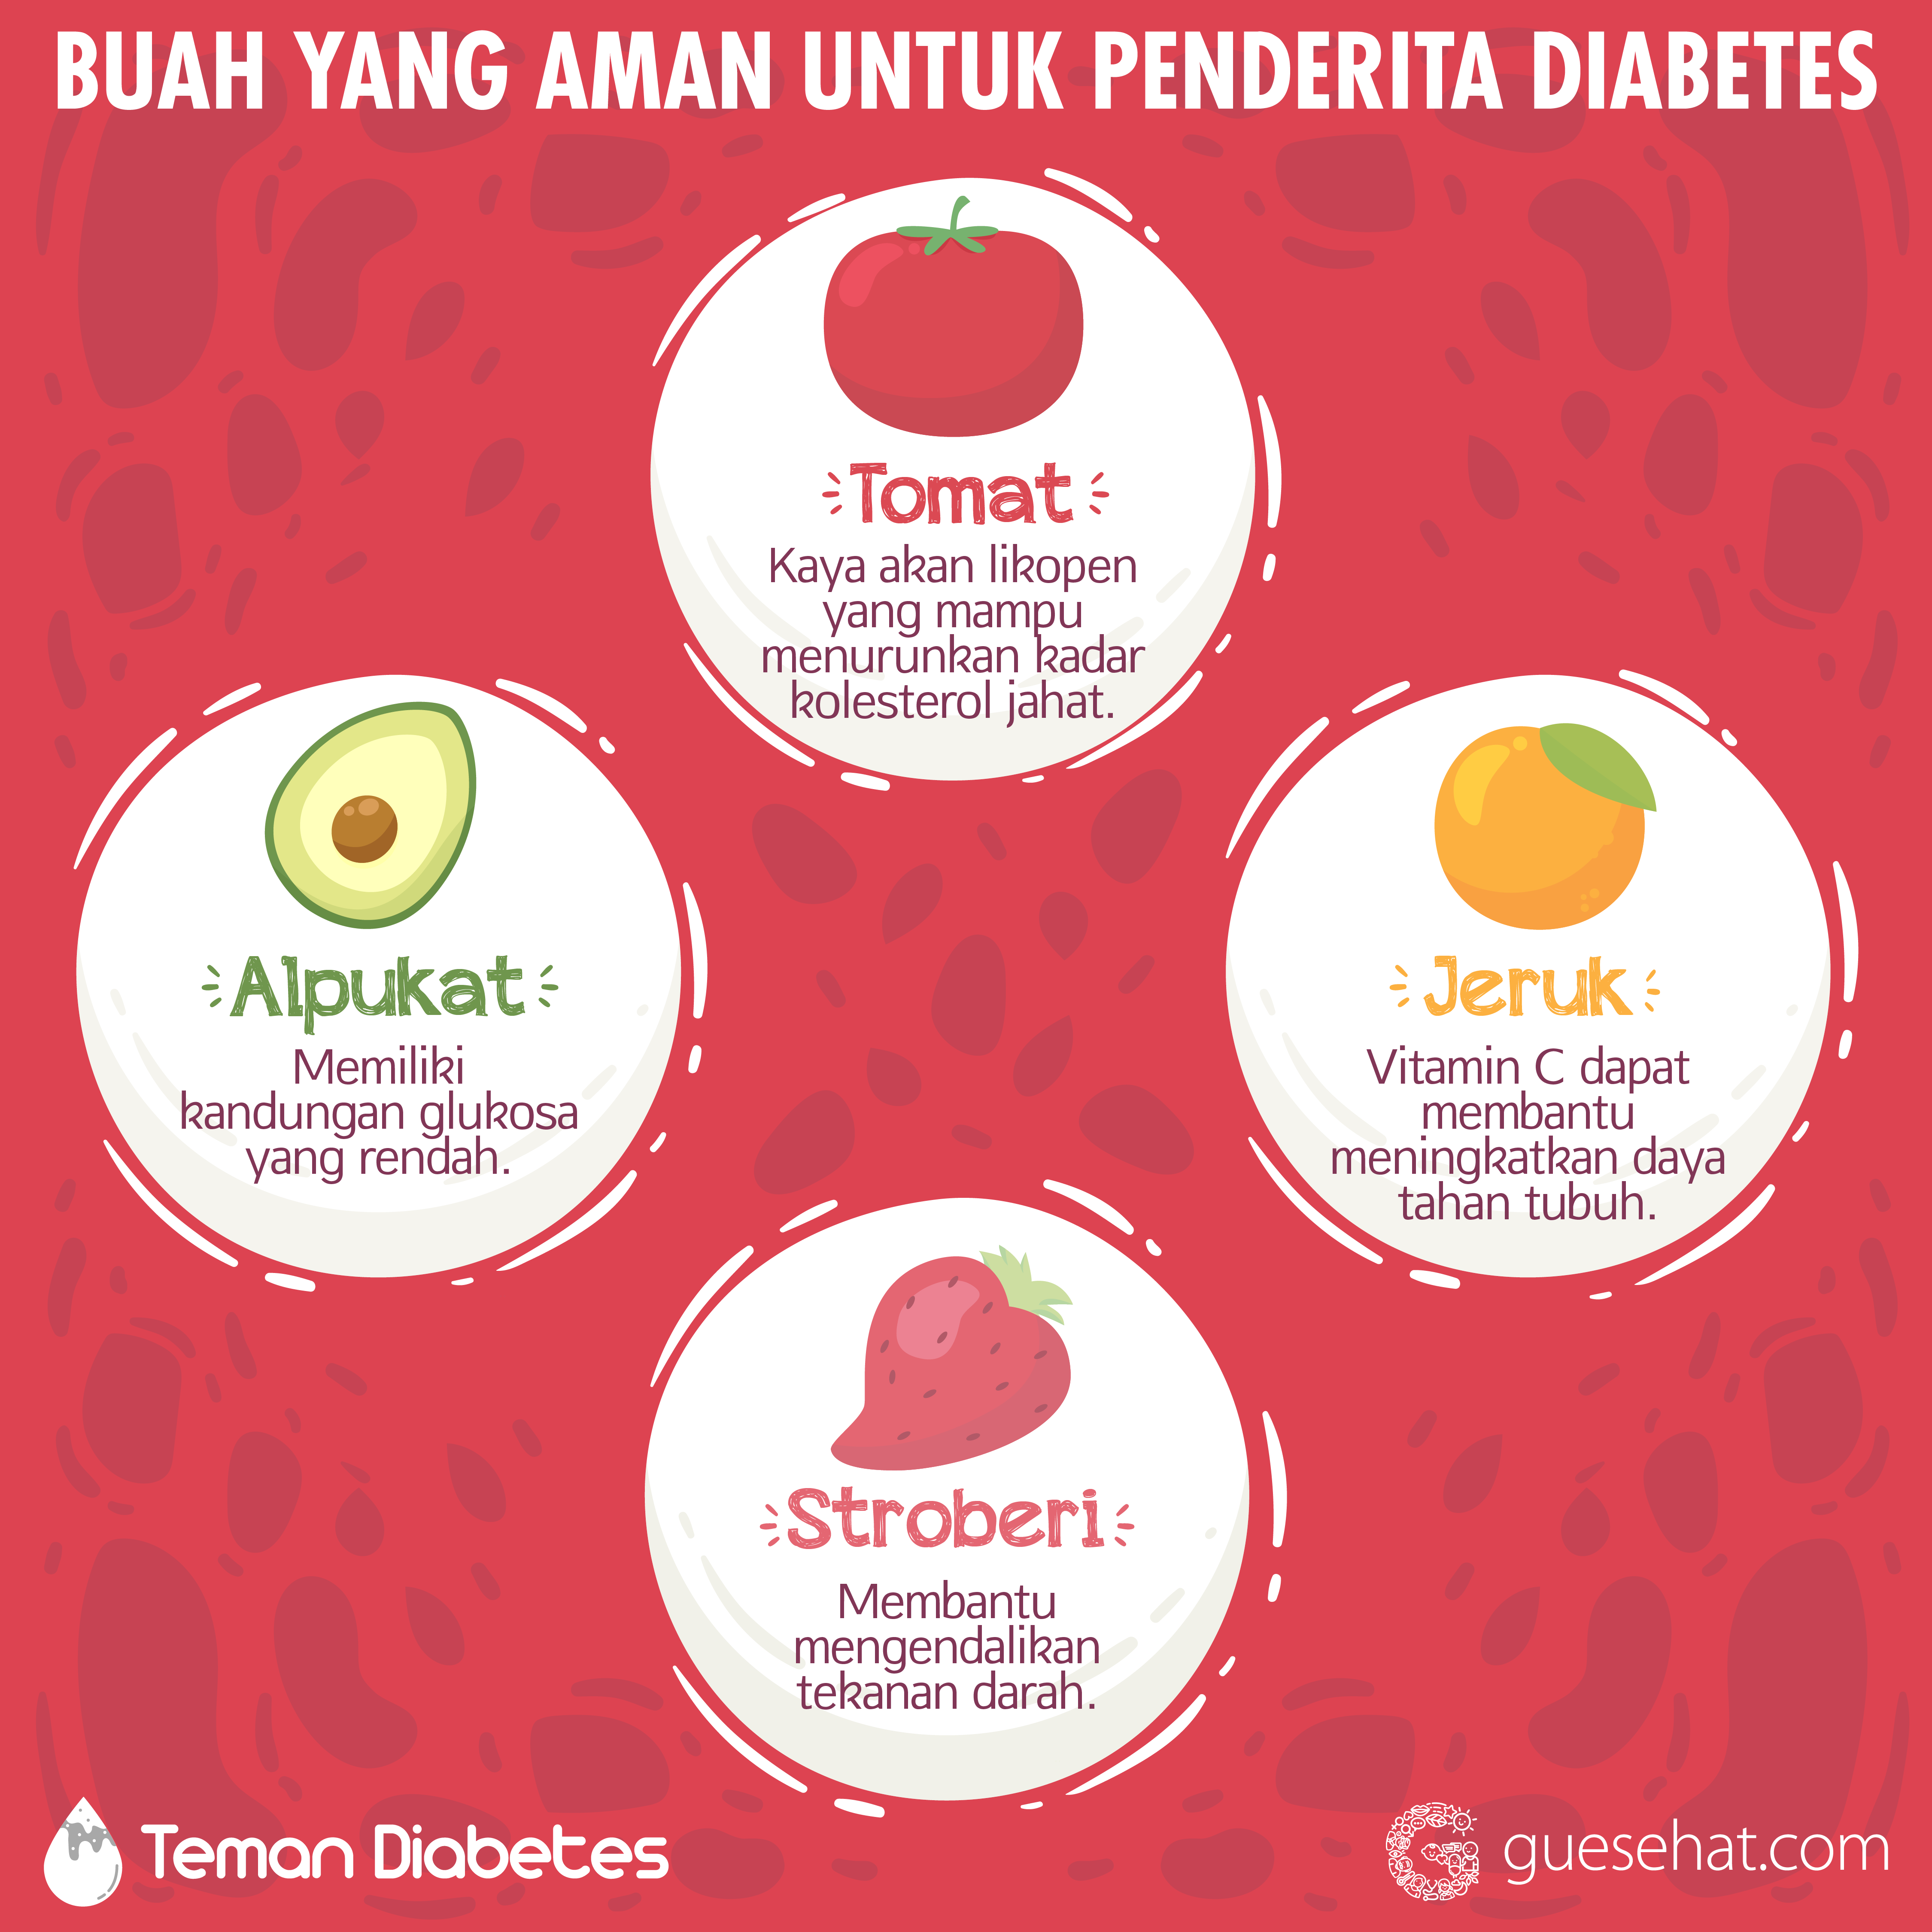 Vruchten die veilig zijn voor diabetes